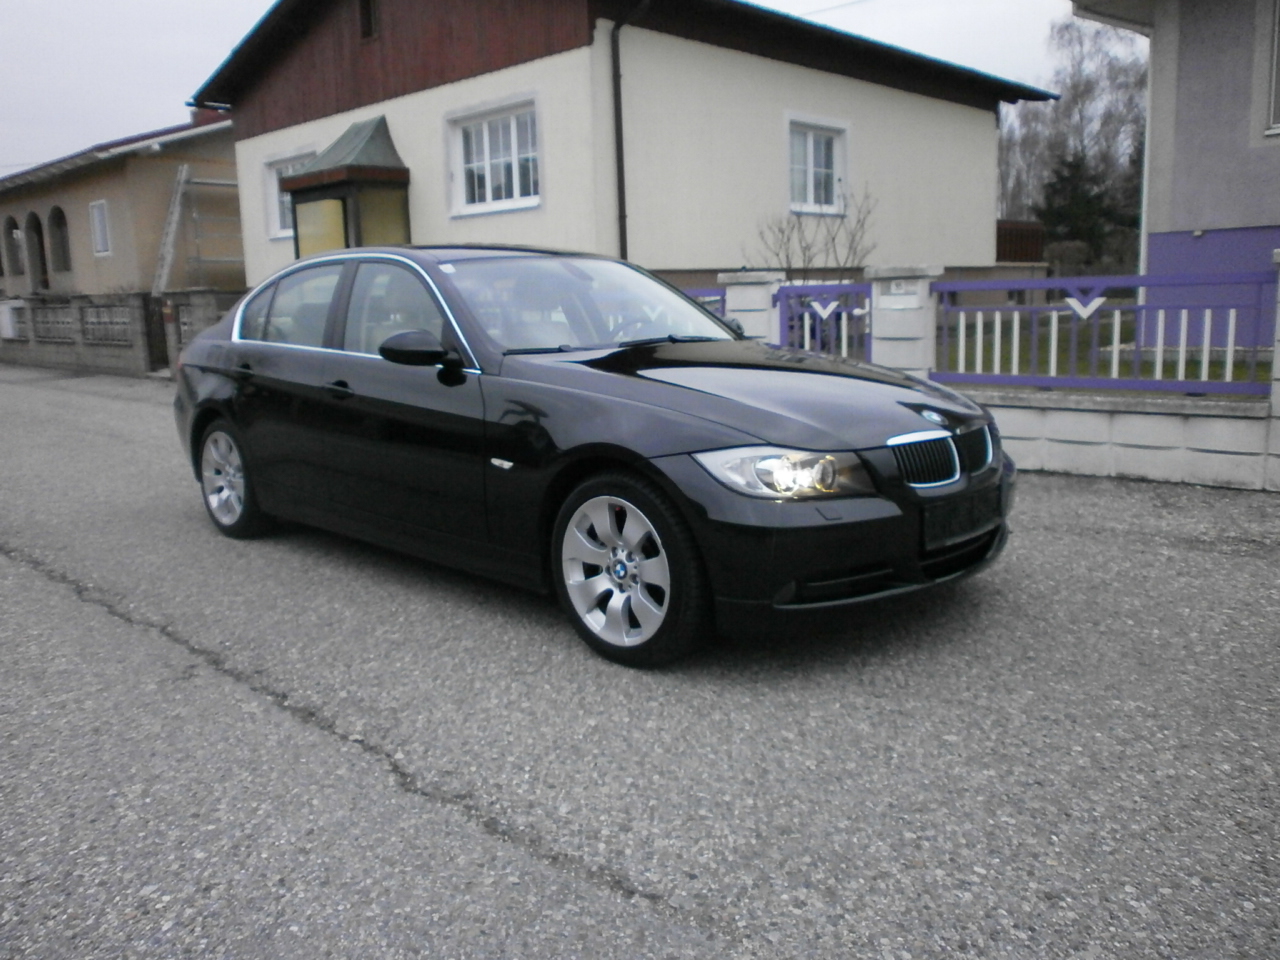 BMW 330xi - € 12900